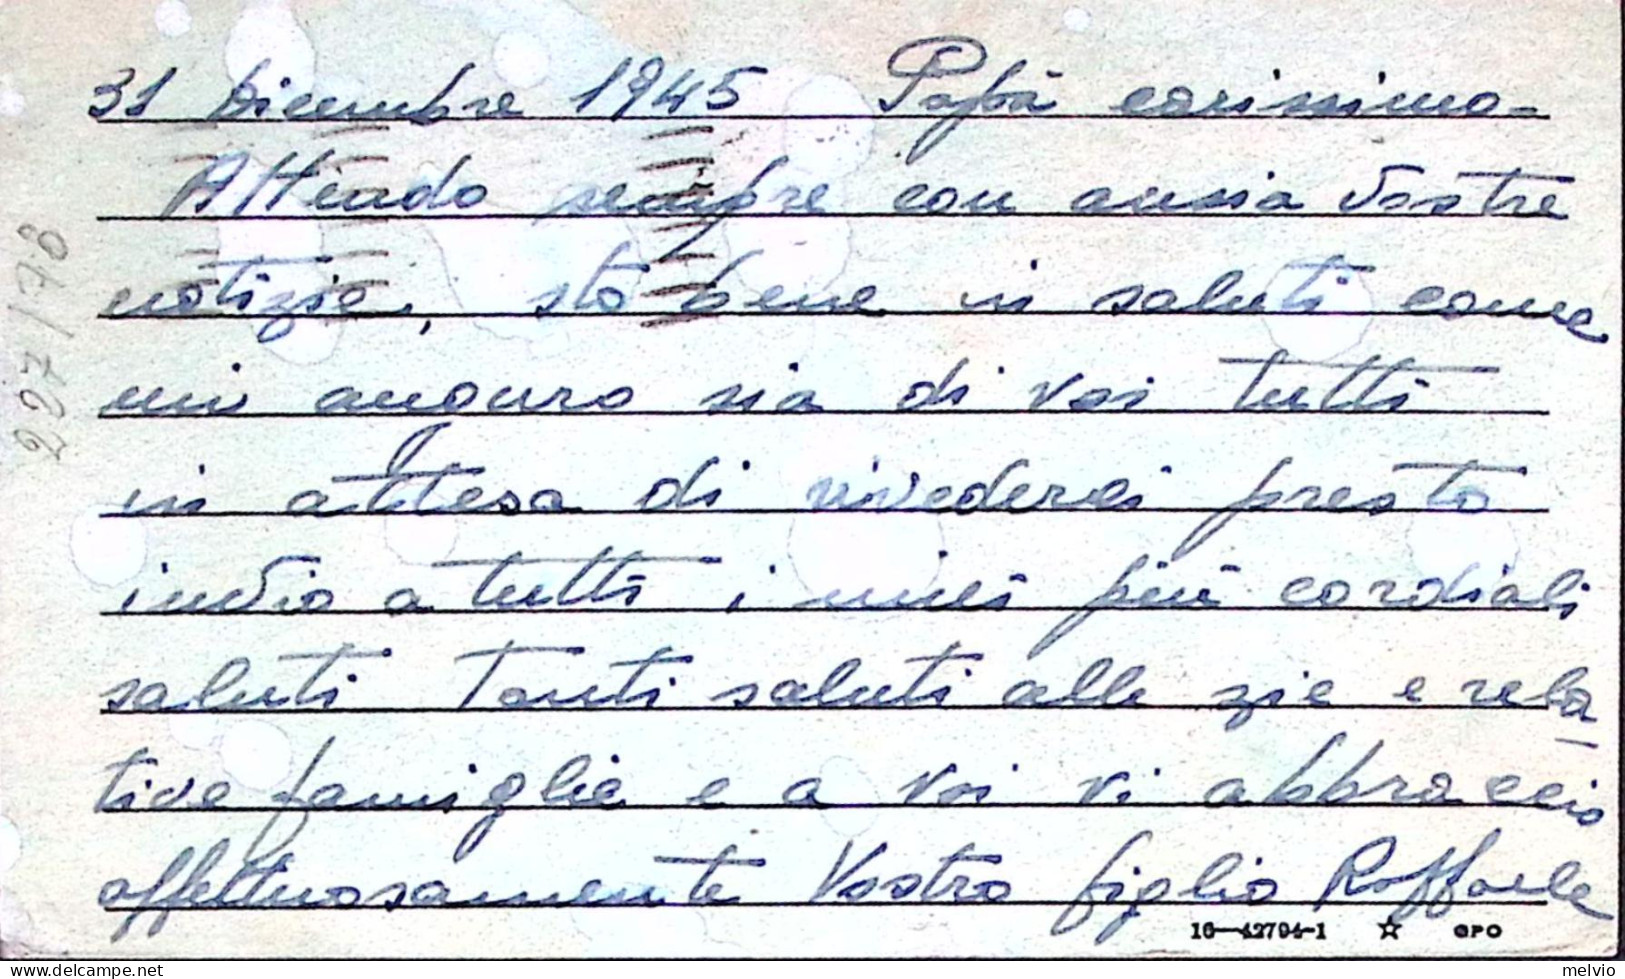 1945-P.O.W. CAMP ROBERTS Manoscritto Su Cartolina Franchigia (31.12) Da Prigioni - Guerre 1939-45